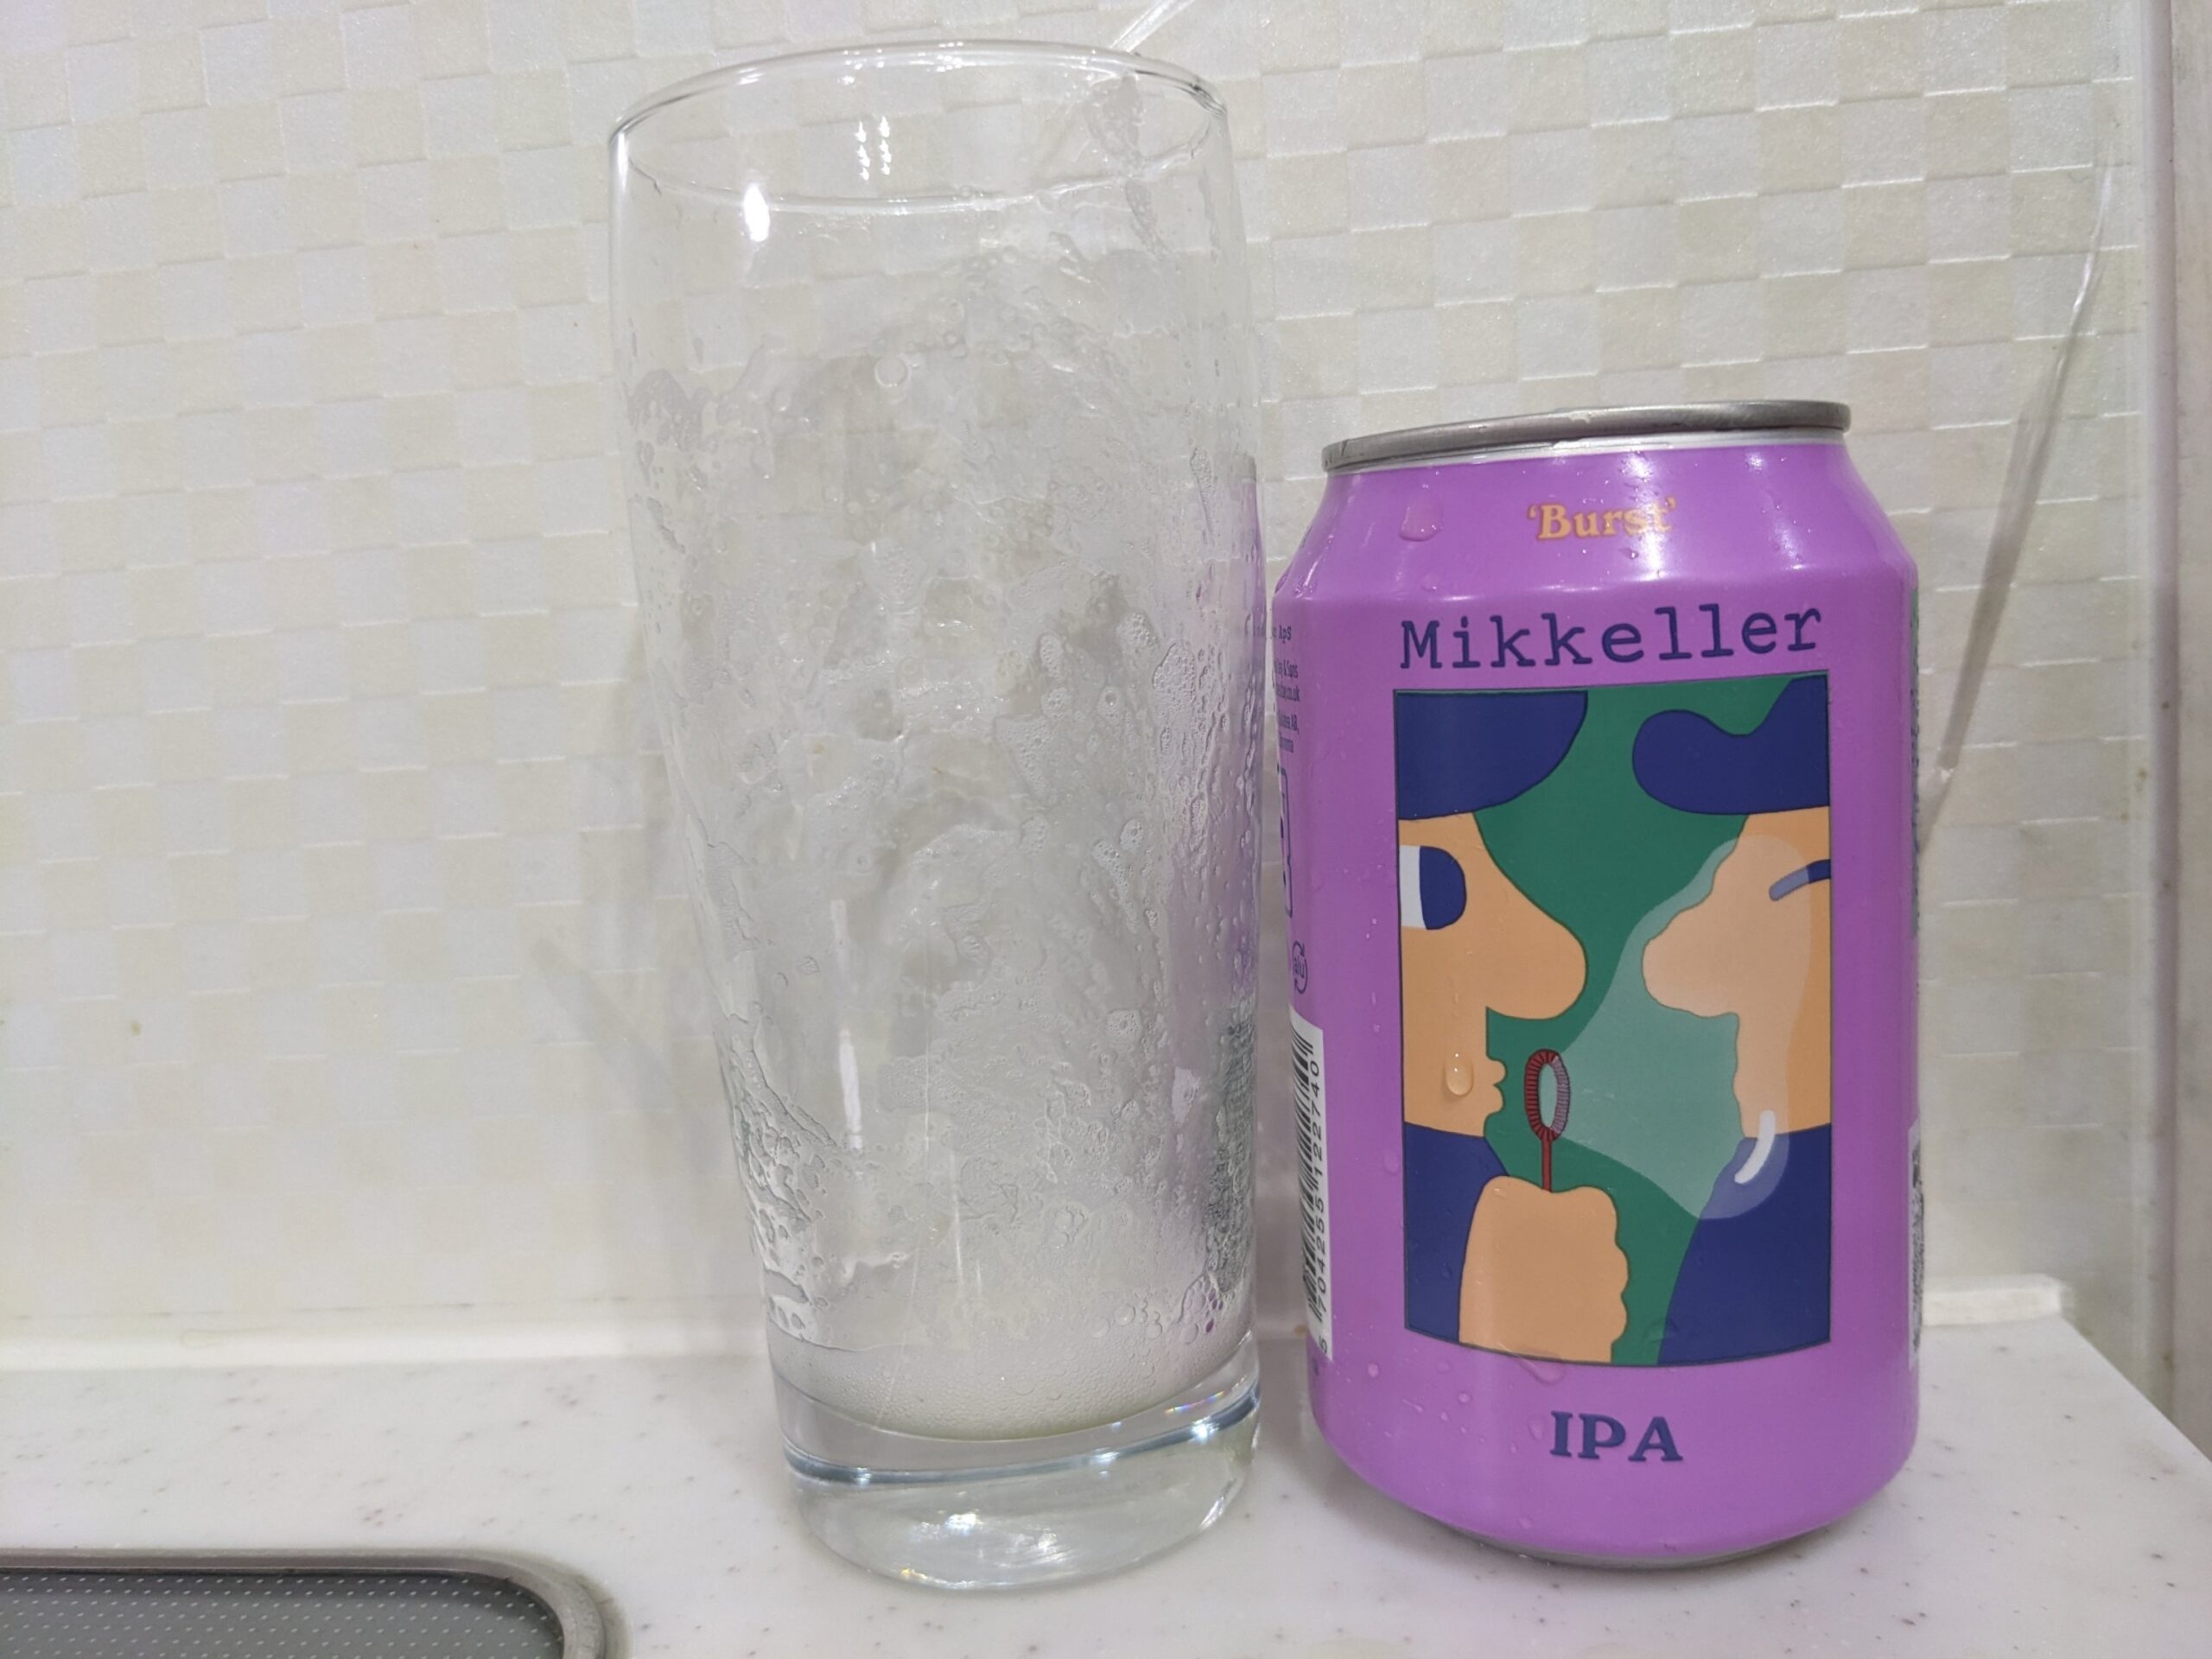 「ミッケラーバーストIPA」を飲み終えたグラスとその空き缶